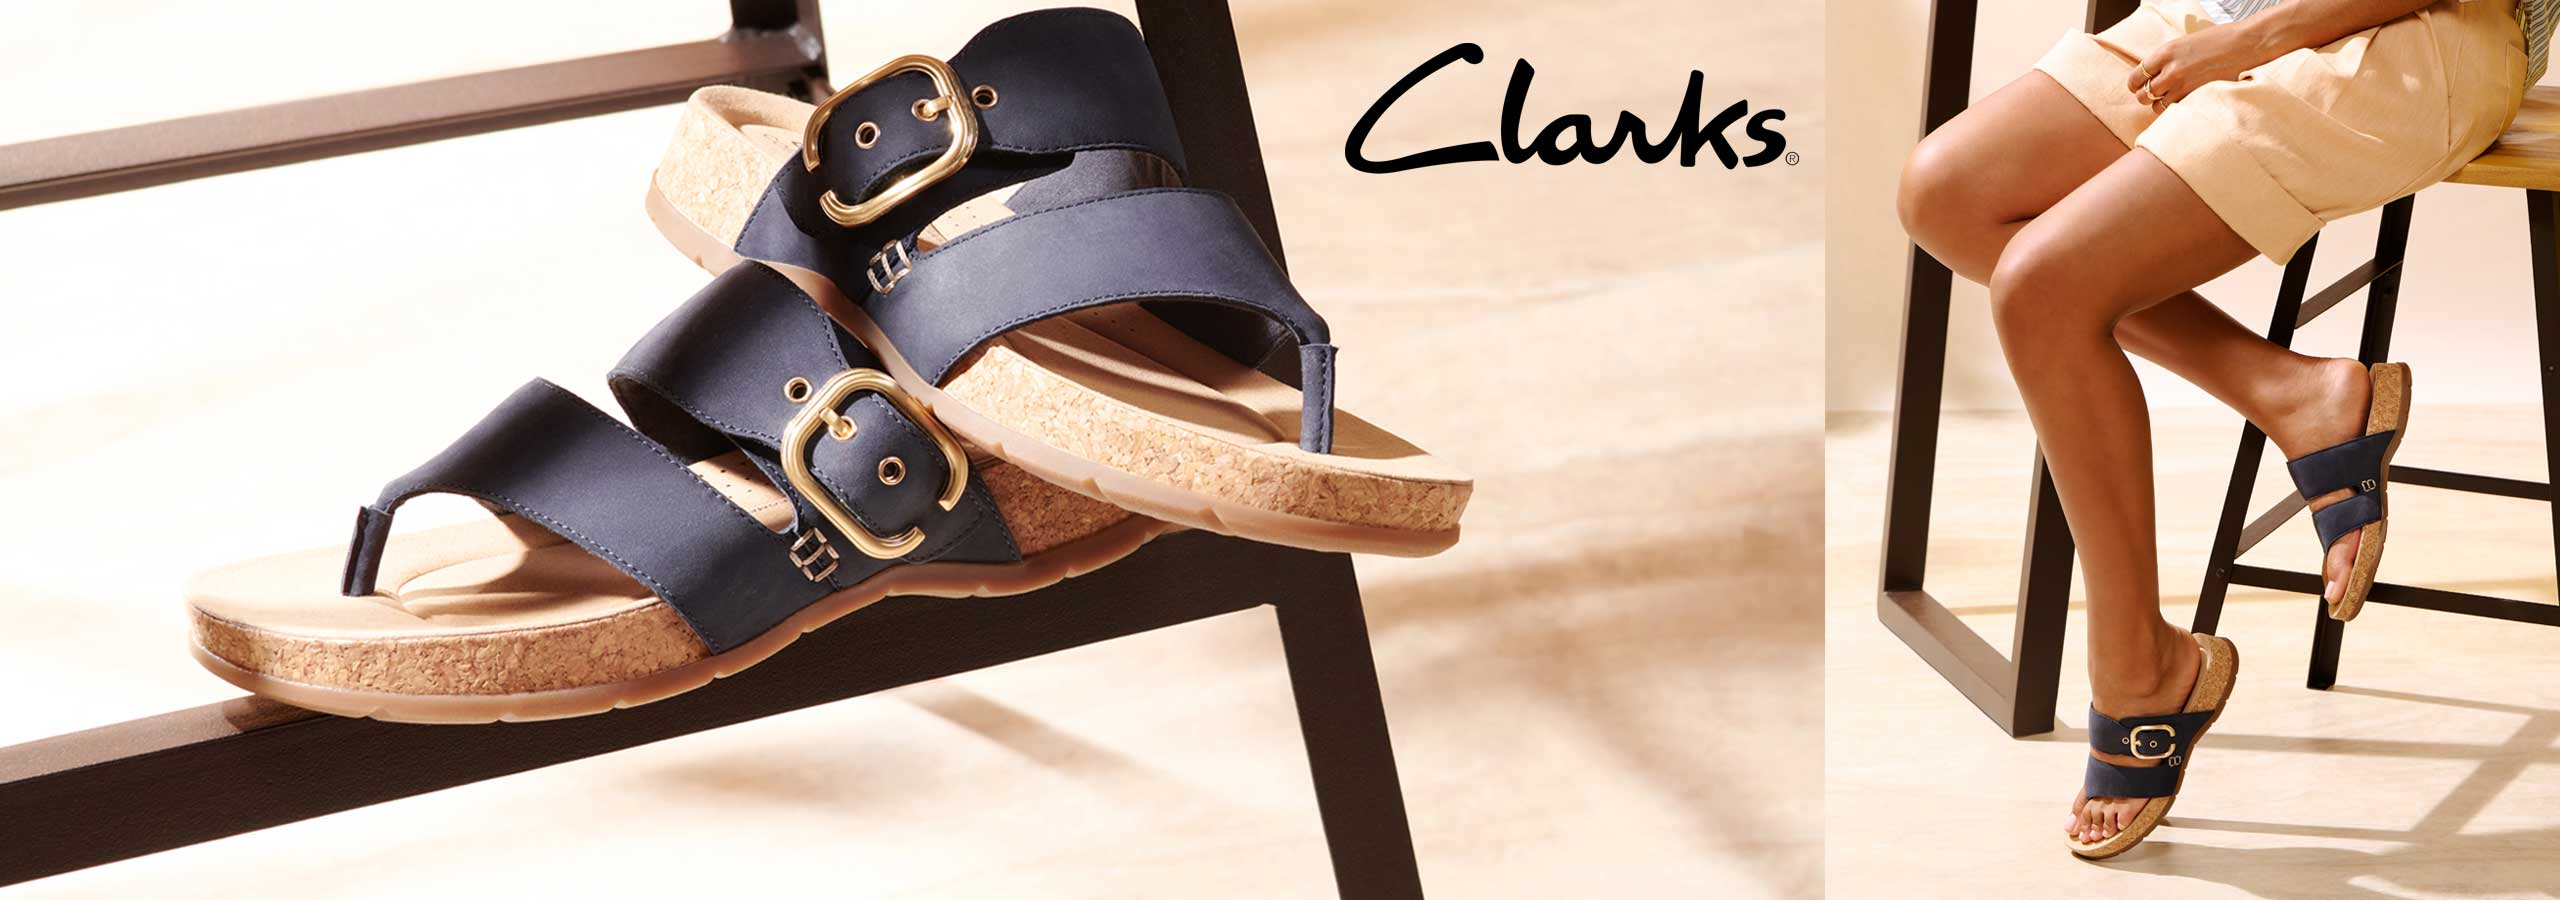 clarks womens sandals banner ss24